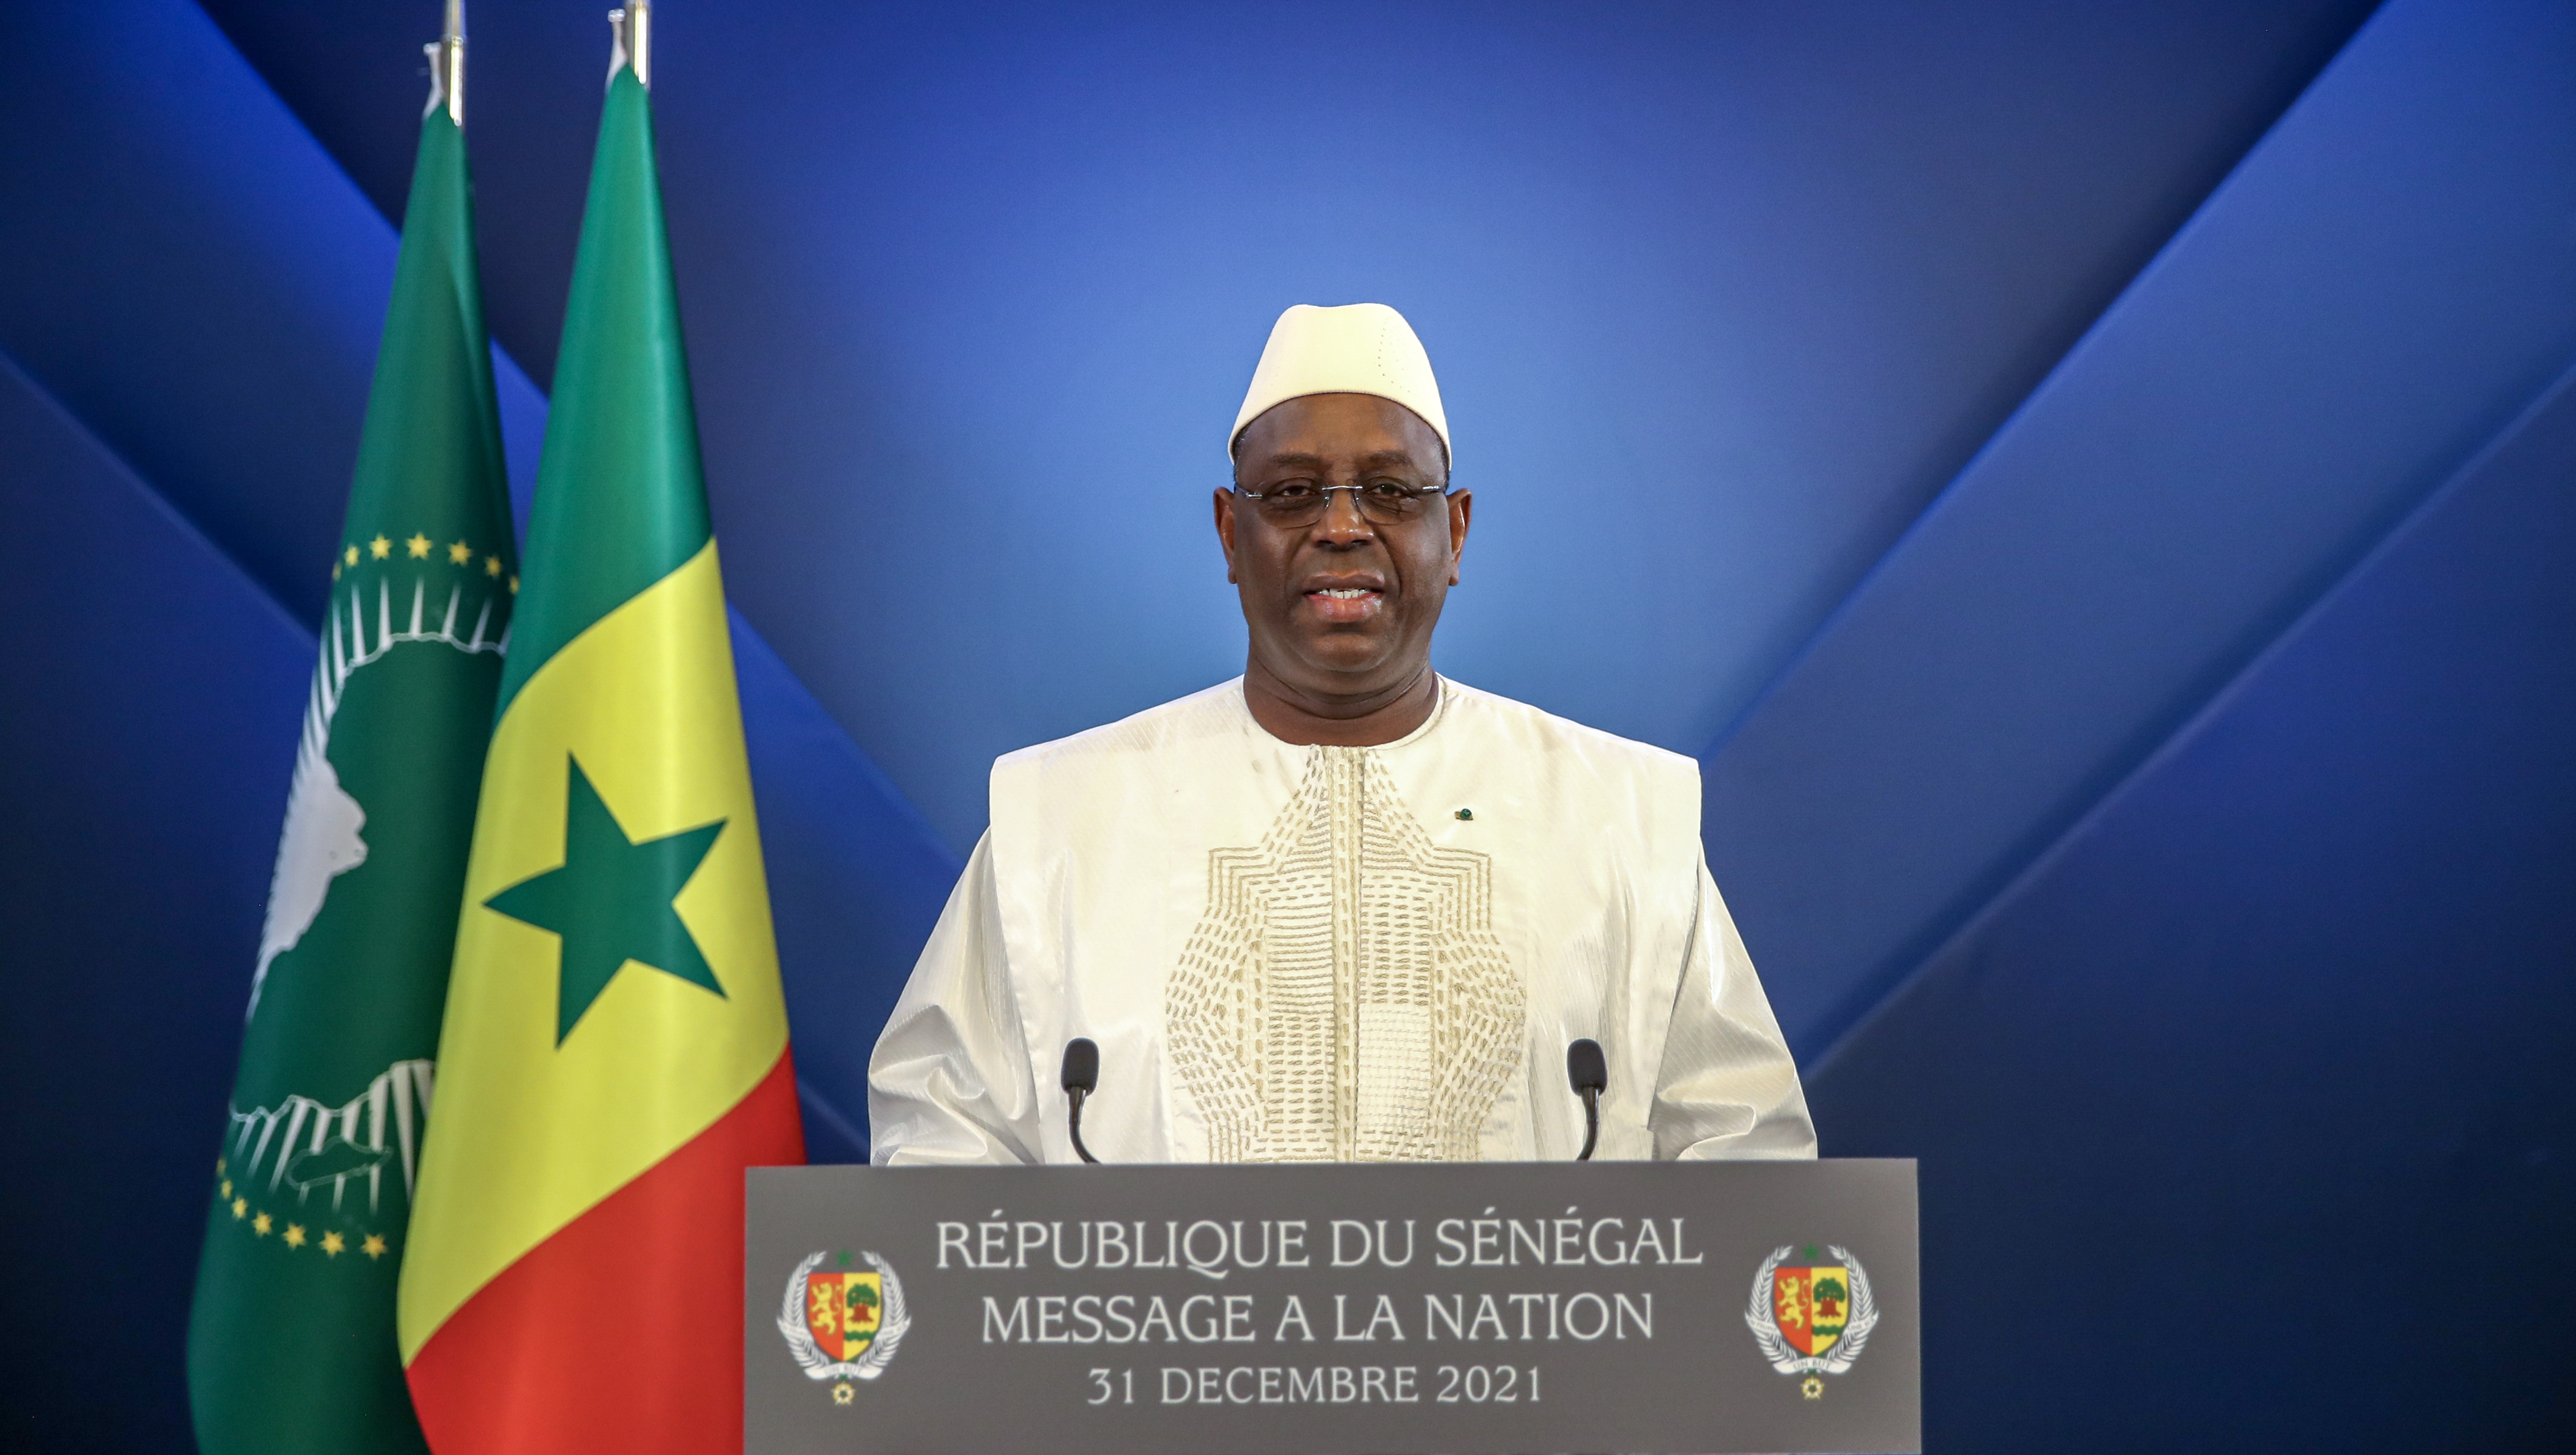 الرئيس السنغالي ماكي صال في خطاب في 31 ديسمبر 2021